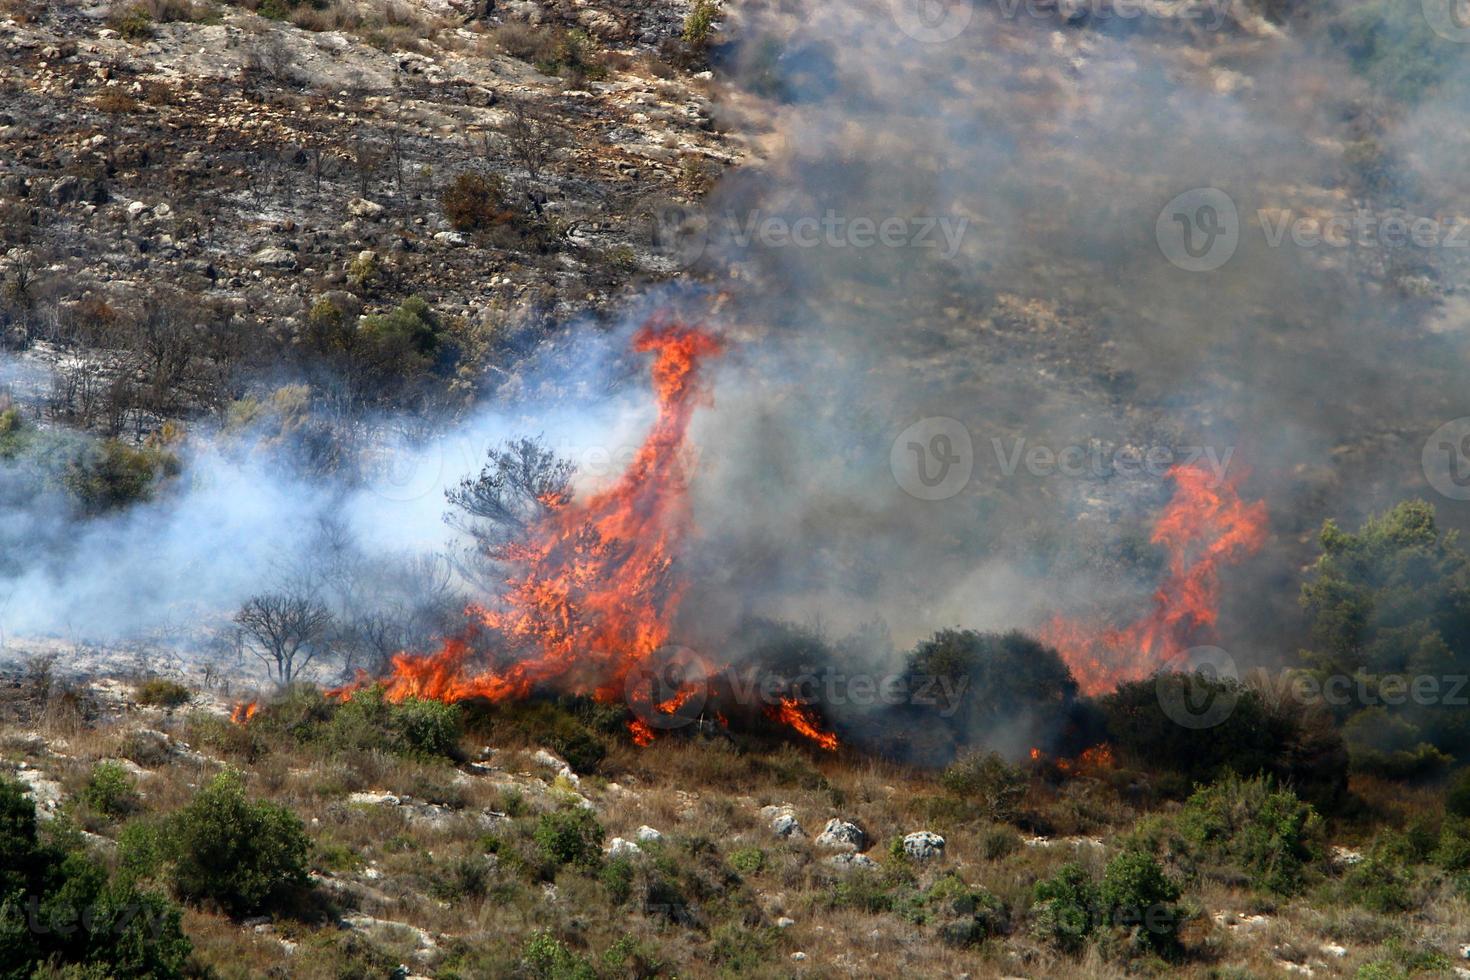 brand in de bergen op de grens van israël en libanon foto